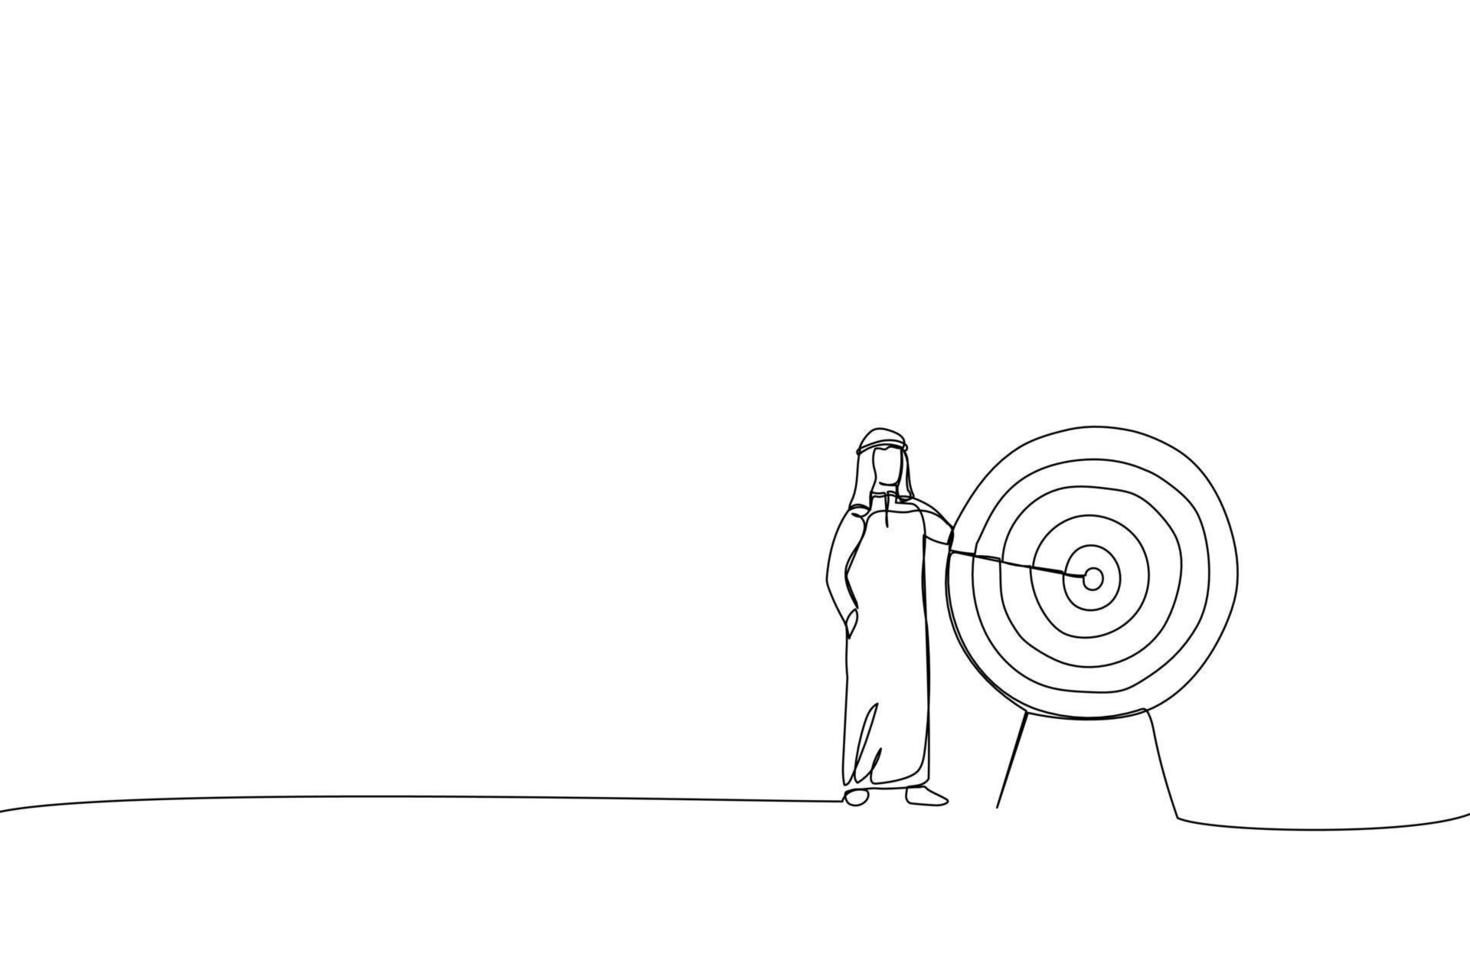 dessin animé d'un homme d'affaires arabe debout à côté d'une énorme cible avec une fléchette au centre, flèche dans le mille. métaphore pour atteindre les buts et objectifs. dessin au trait continu vecteur